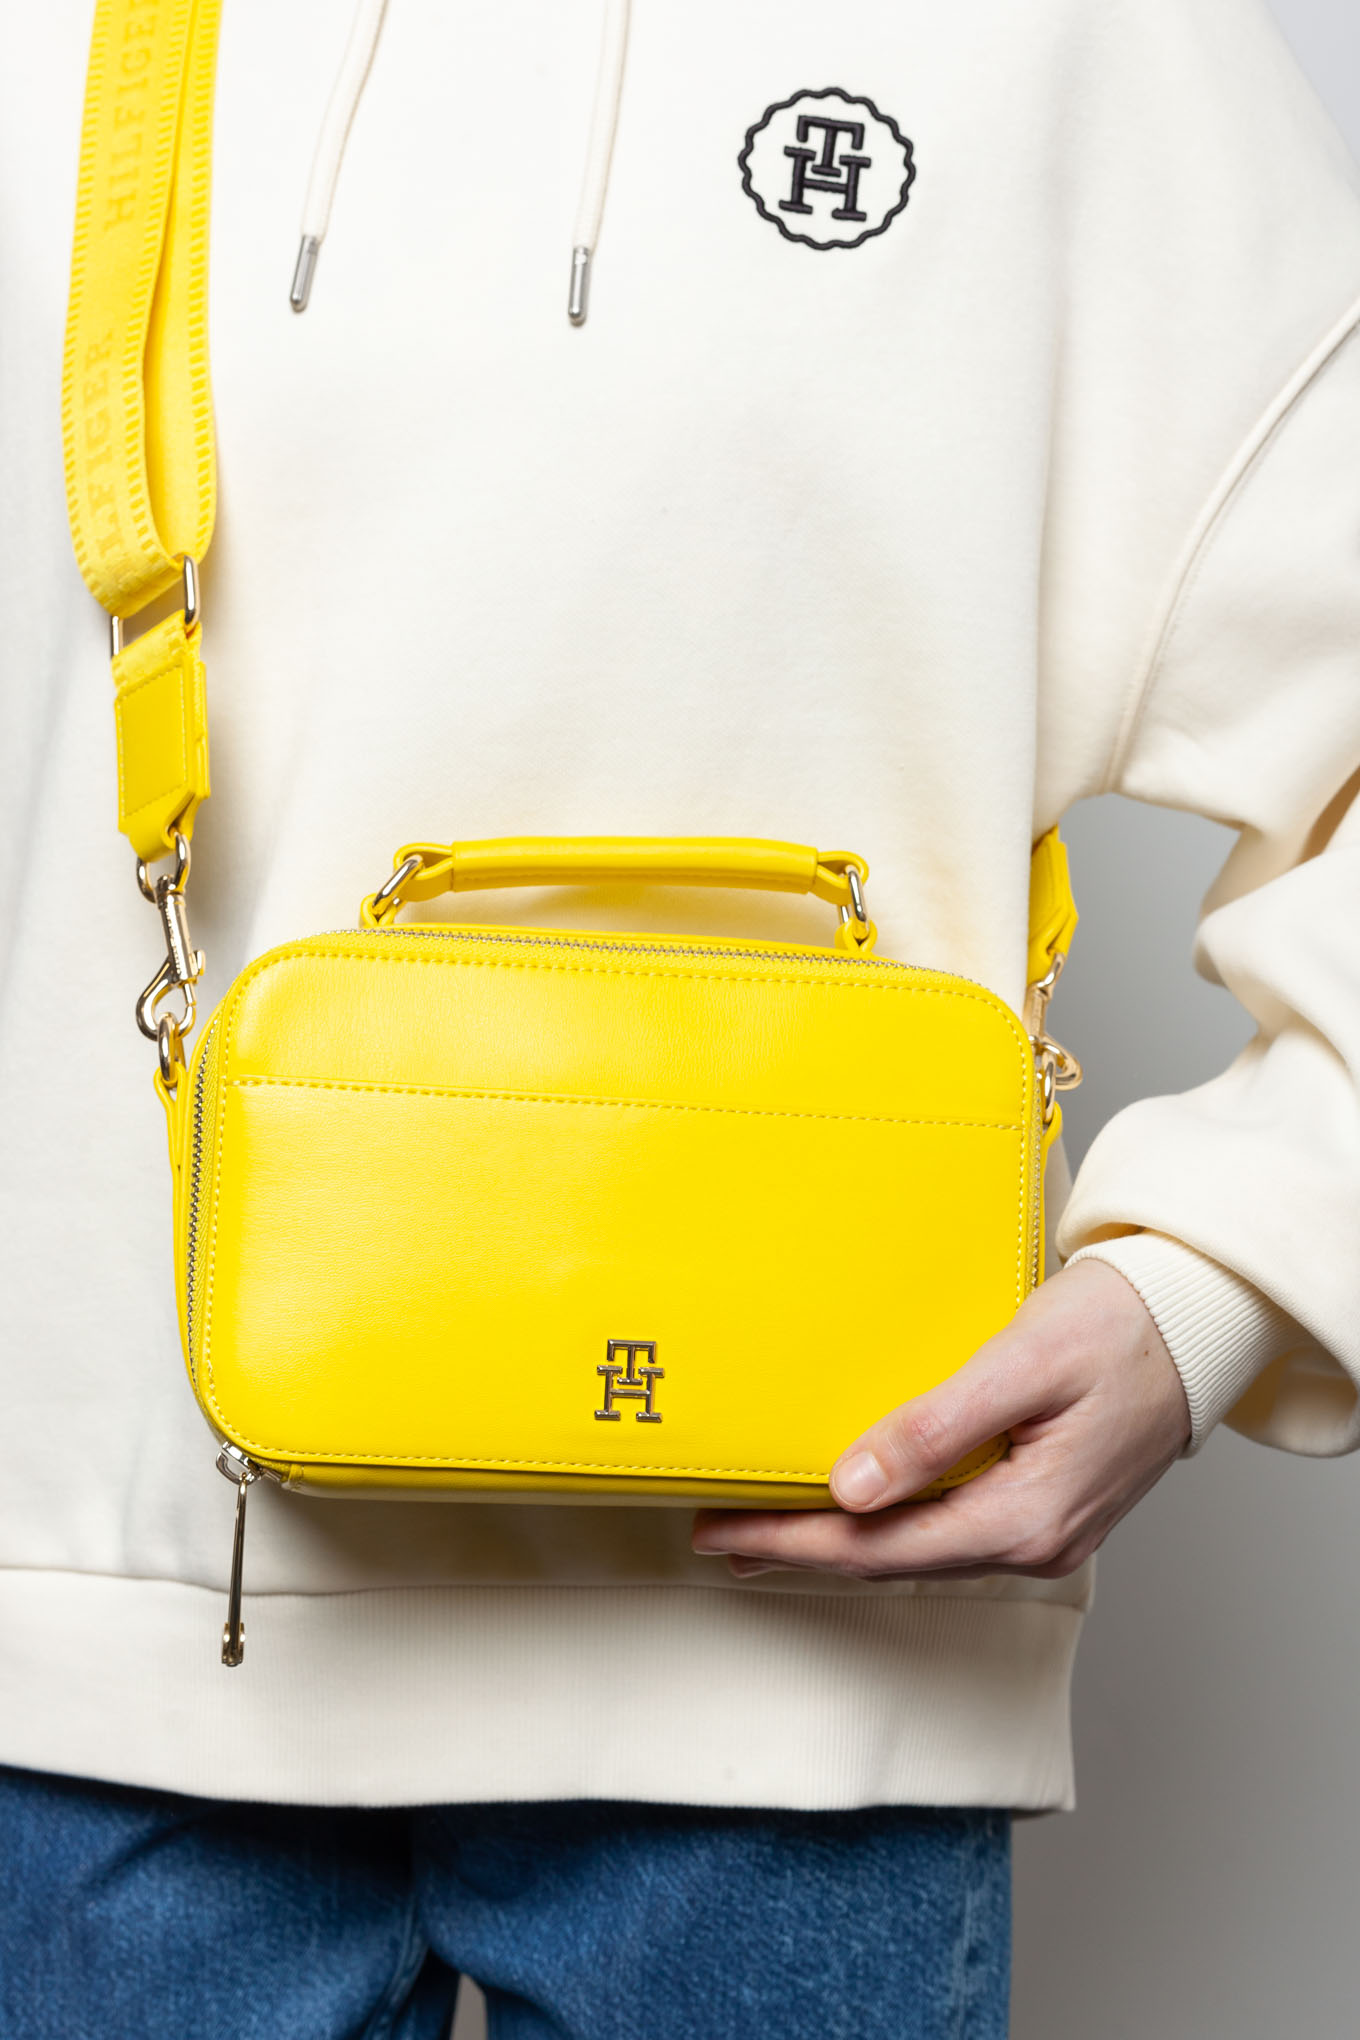 сумка в модном желтом цвете